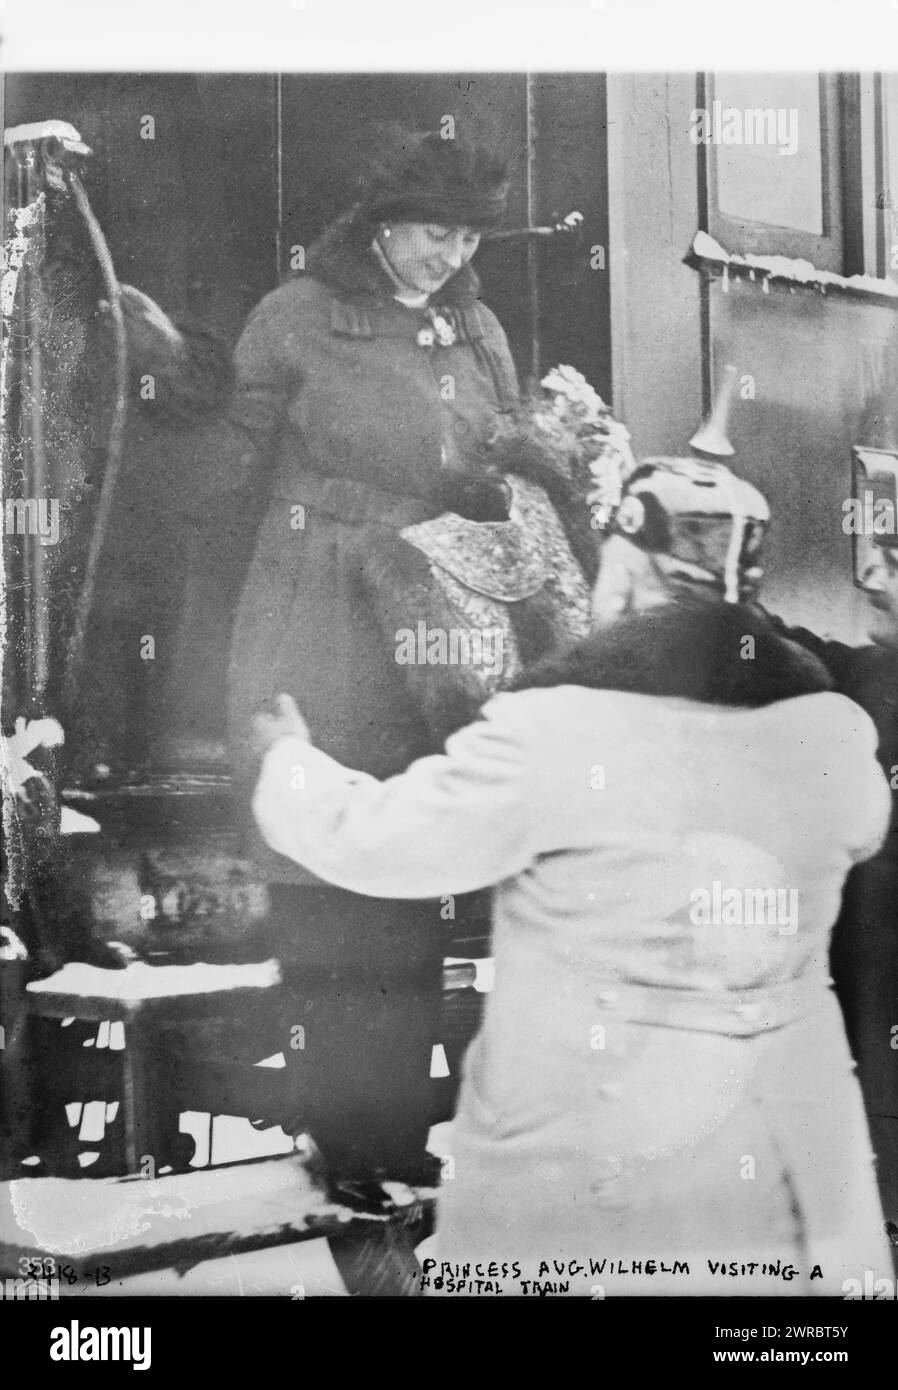 Princesa Ago. Wilhelm Visitando un tren de hospital, la fotografía probablemente muestra a Victoria Luisa de Prusia (la duquesa de Brunswick), hija de Guillermo II Emperador de Alemania bajando de un tren durante la Primera Guerra Mundial, entre 1914 y ca. 1915, Guerra Mundial, 1914-1918, Negativos de vidrio, 1 negativo: Vidrio Foto de stock